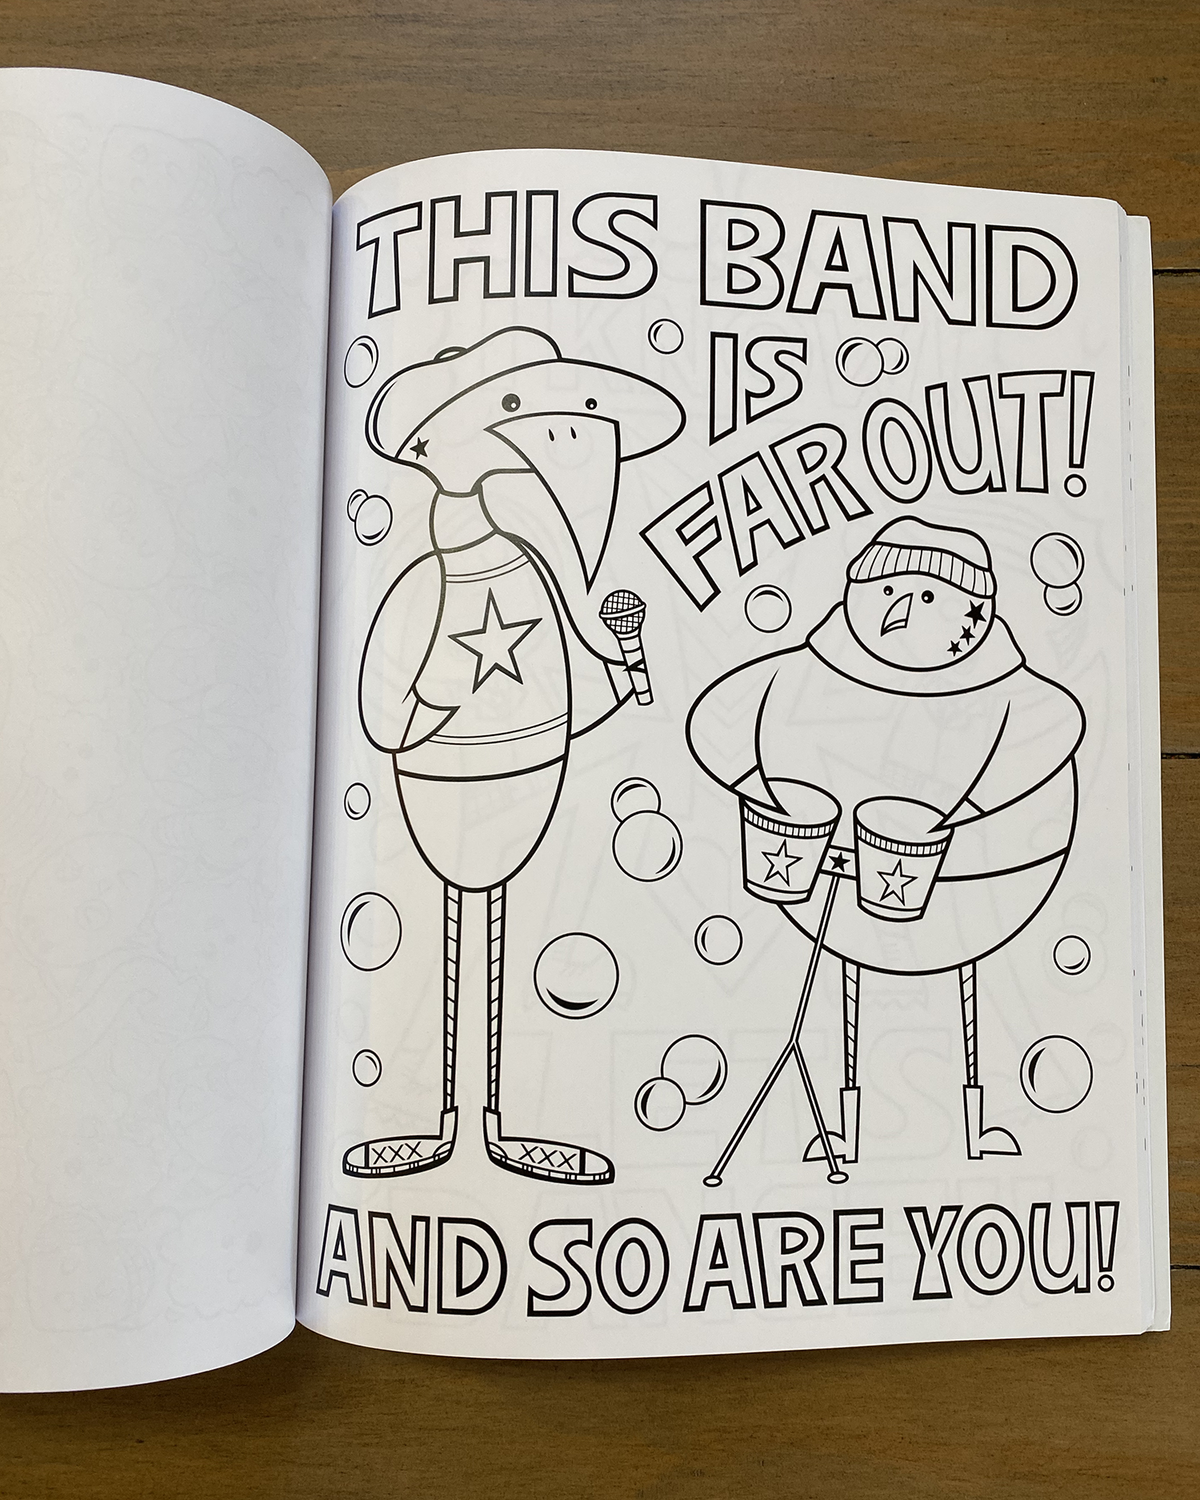 You Are So Rad! A Super Fun Coloring Book By Nan Coffey